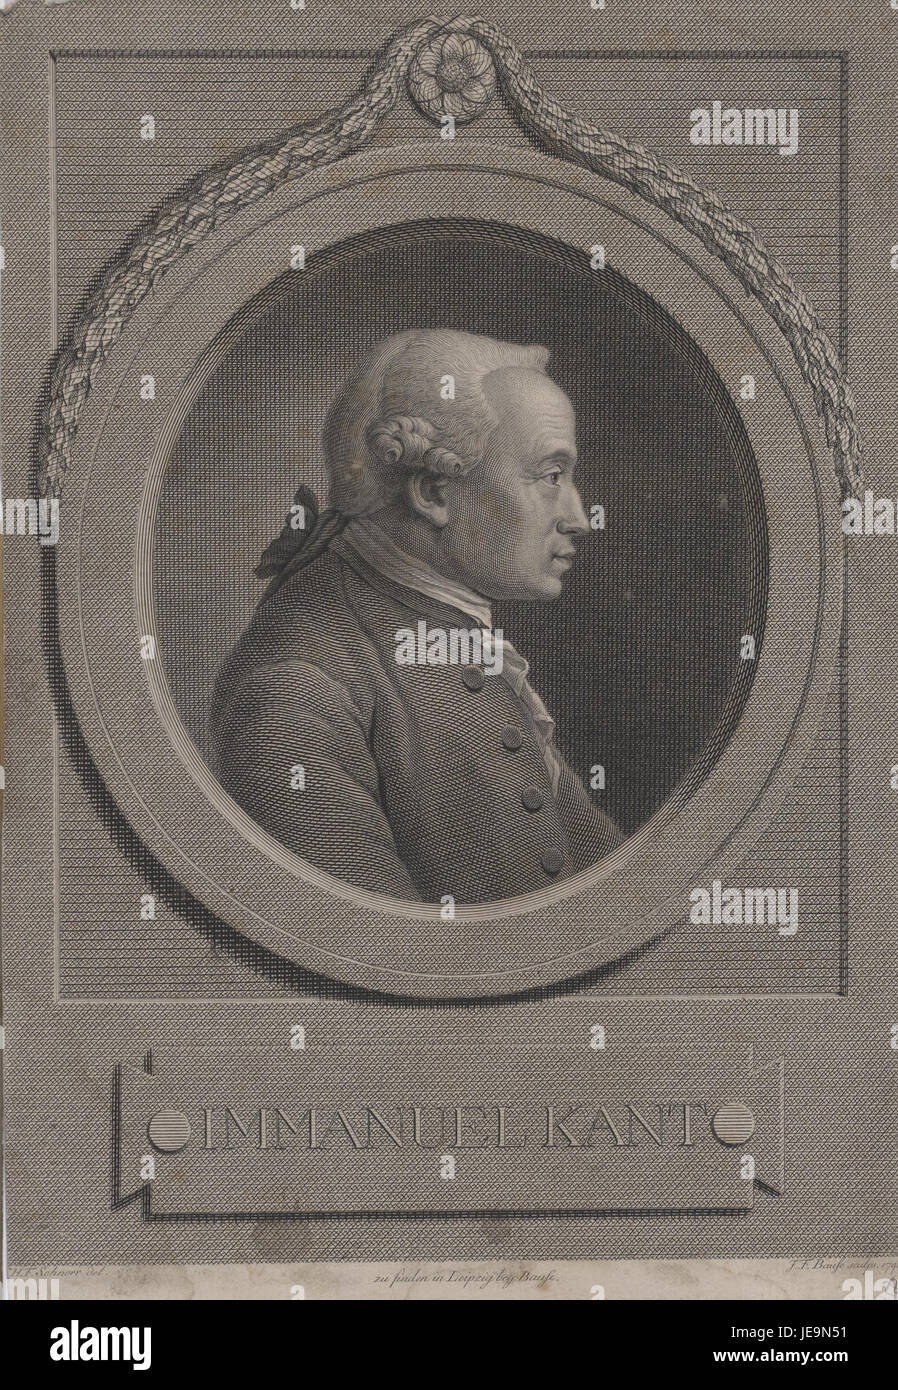 Bildnis-des-Immanuel Kant-à-Johann Friedrich bause-verlagsort--leipzig-1791-berlin-staatsbibliothek-zu-berlin Banque D'Images